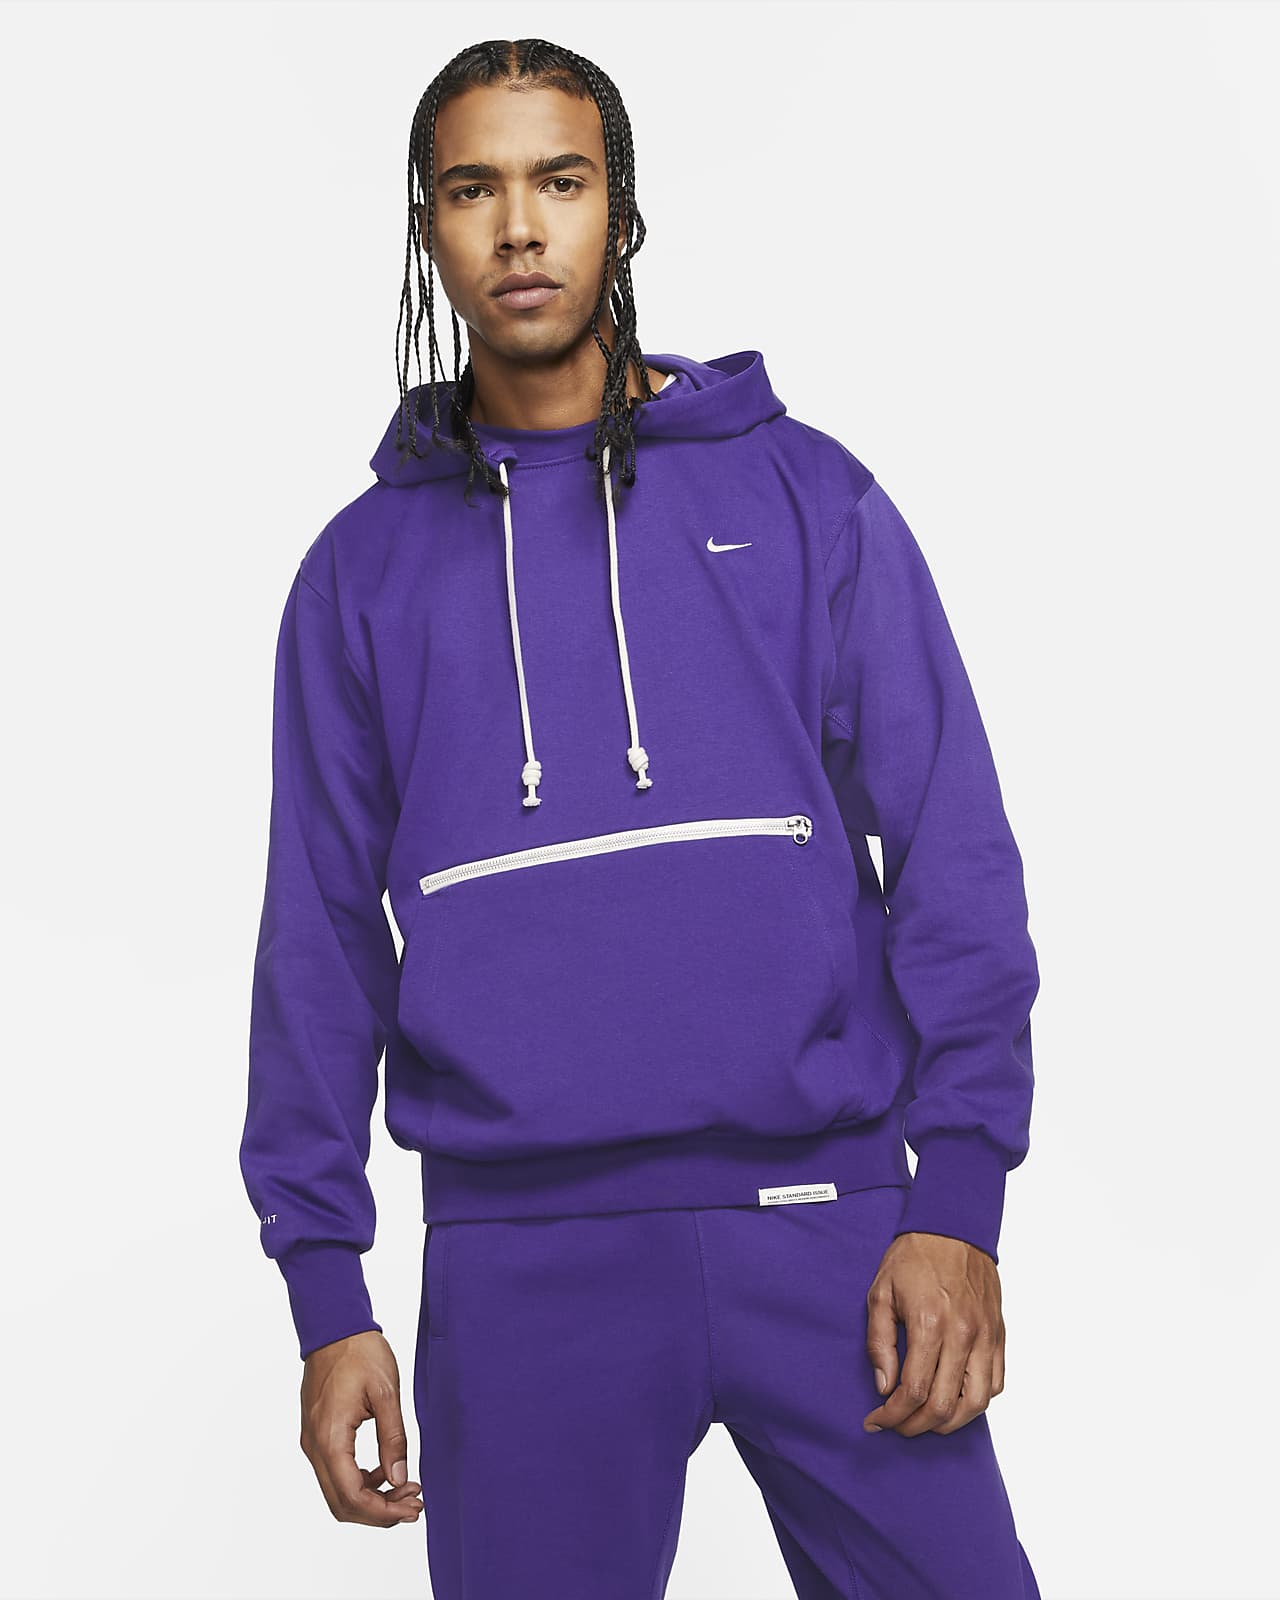 purple and teal nike hoodie